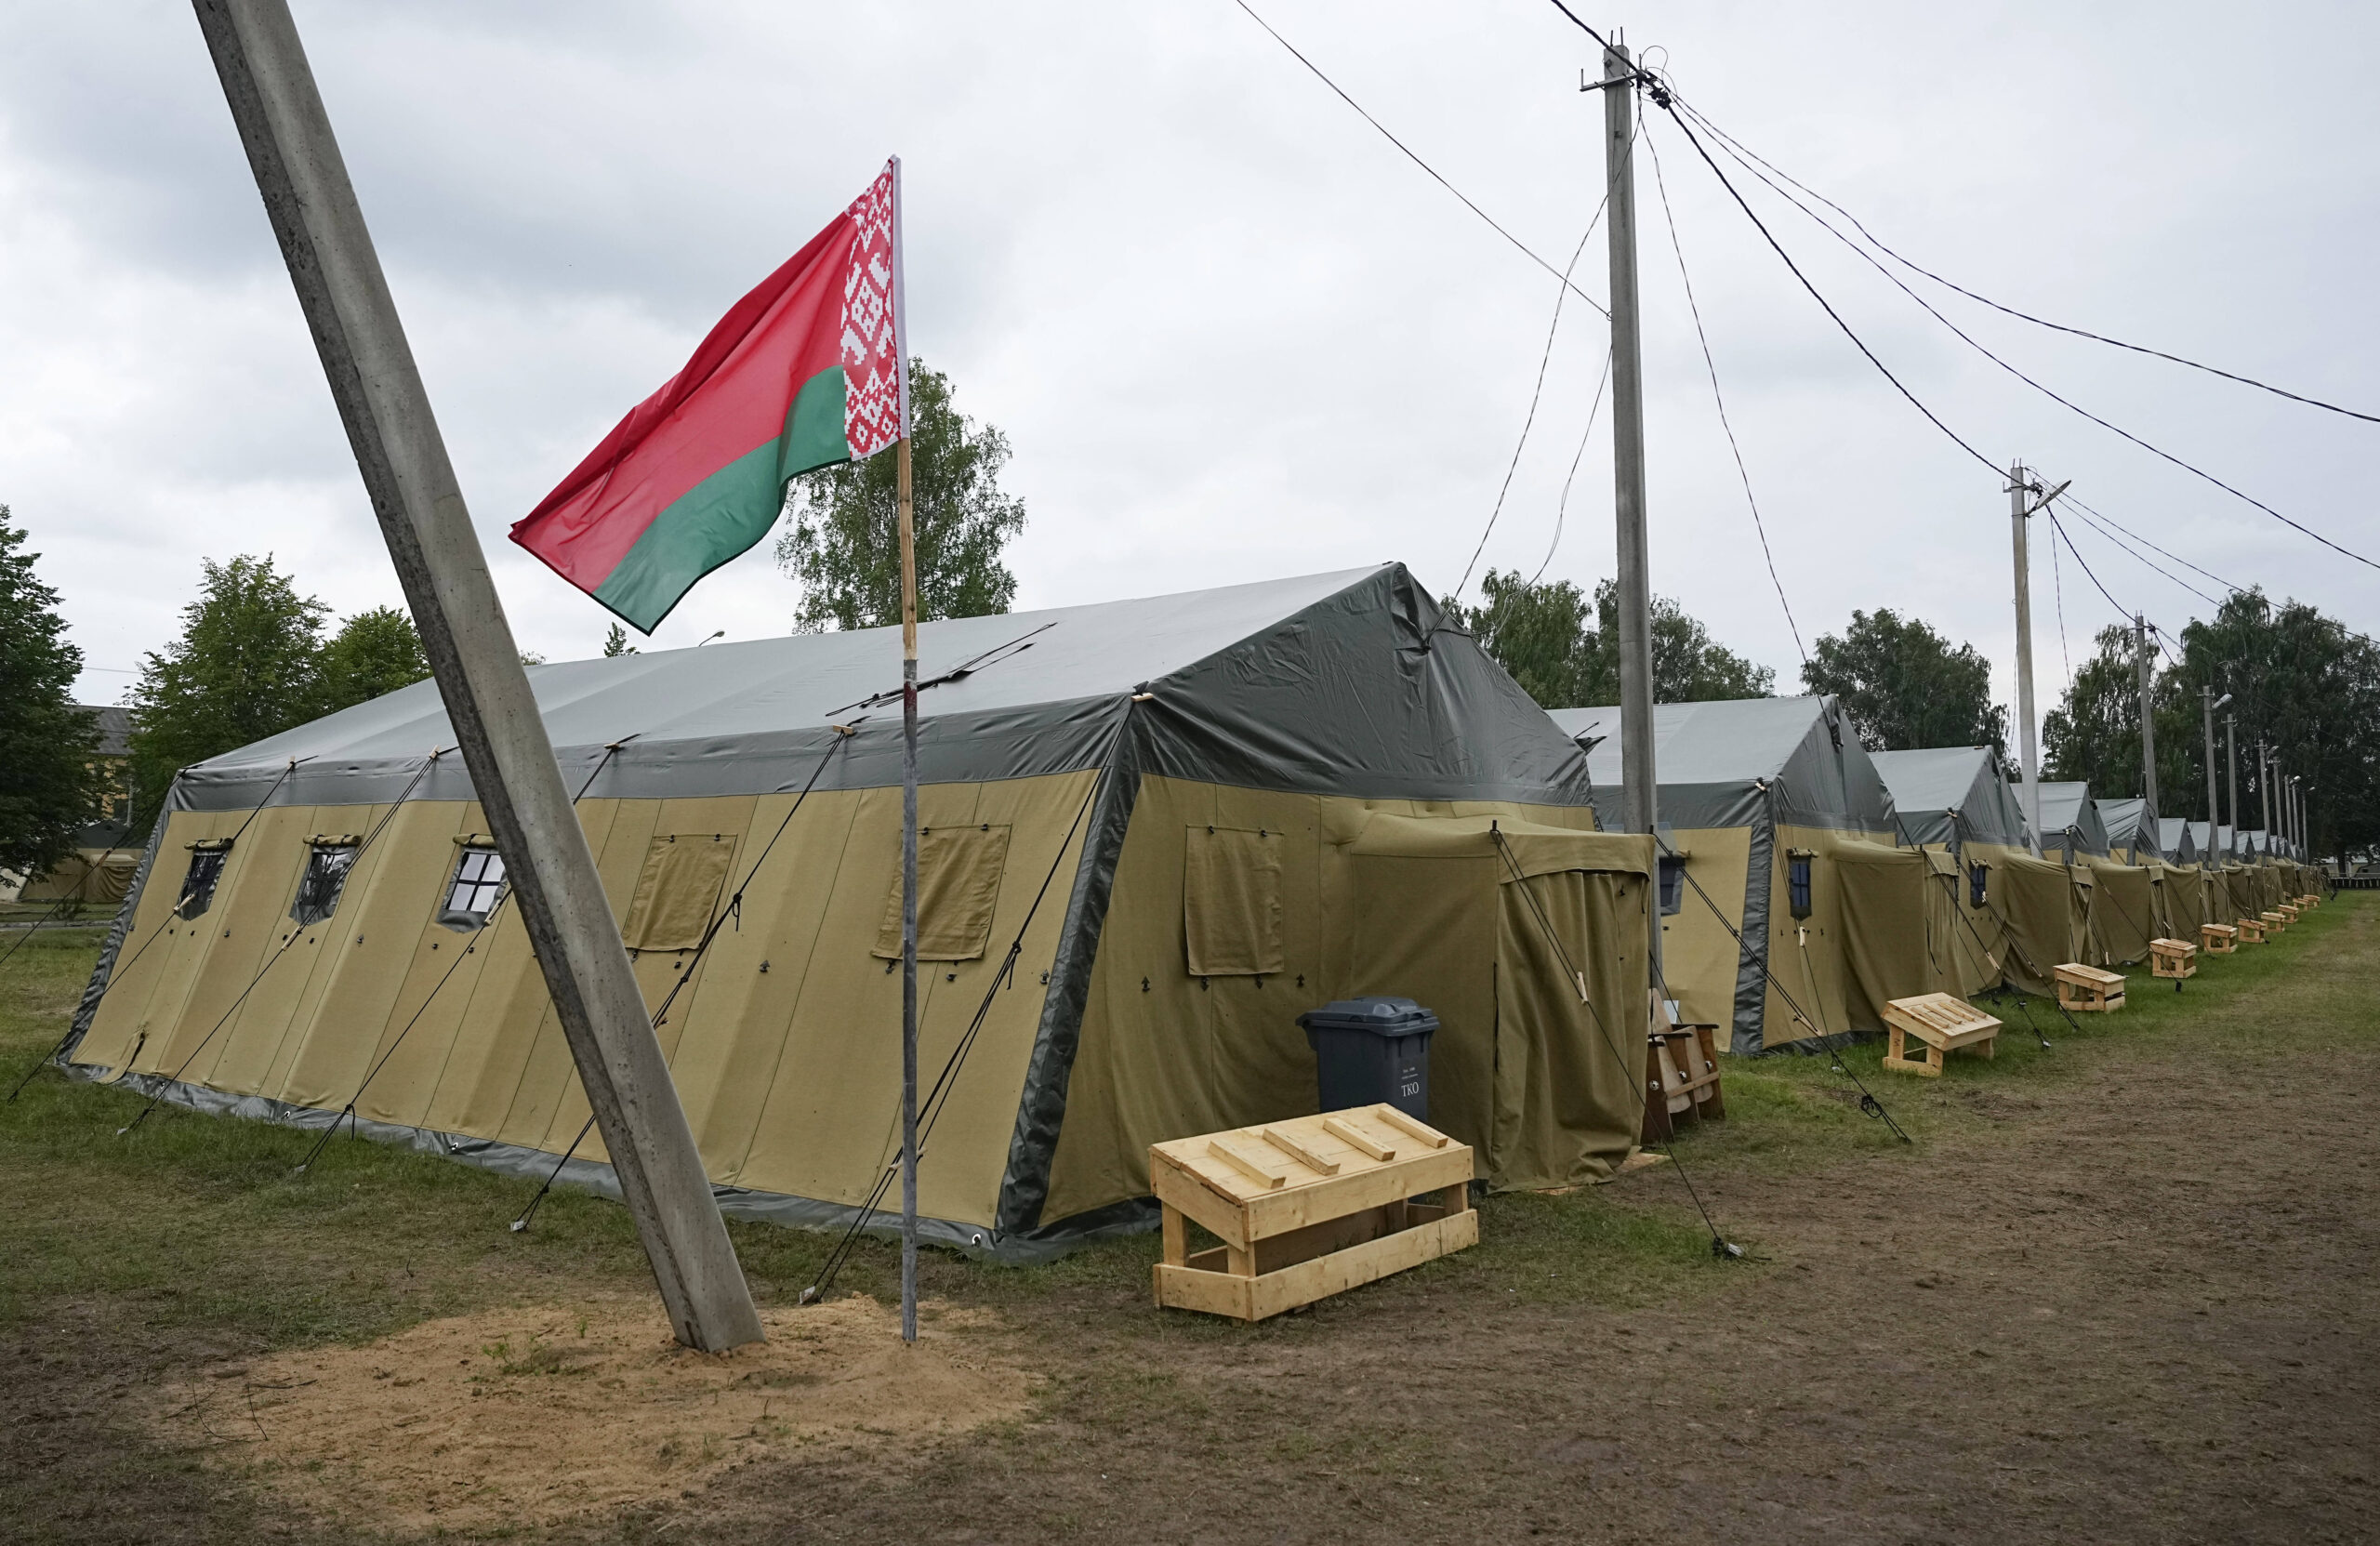 Vista del campamento del ejército bielorruso cerca del pueblo de Tsel, a unos 90 kilómetros al sureste de Minsk, que supuestamente iba a albergar a algunos de los mercenarios de Wagner. © Alexander Zemlianichenko/AP/SIPA 